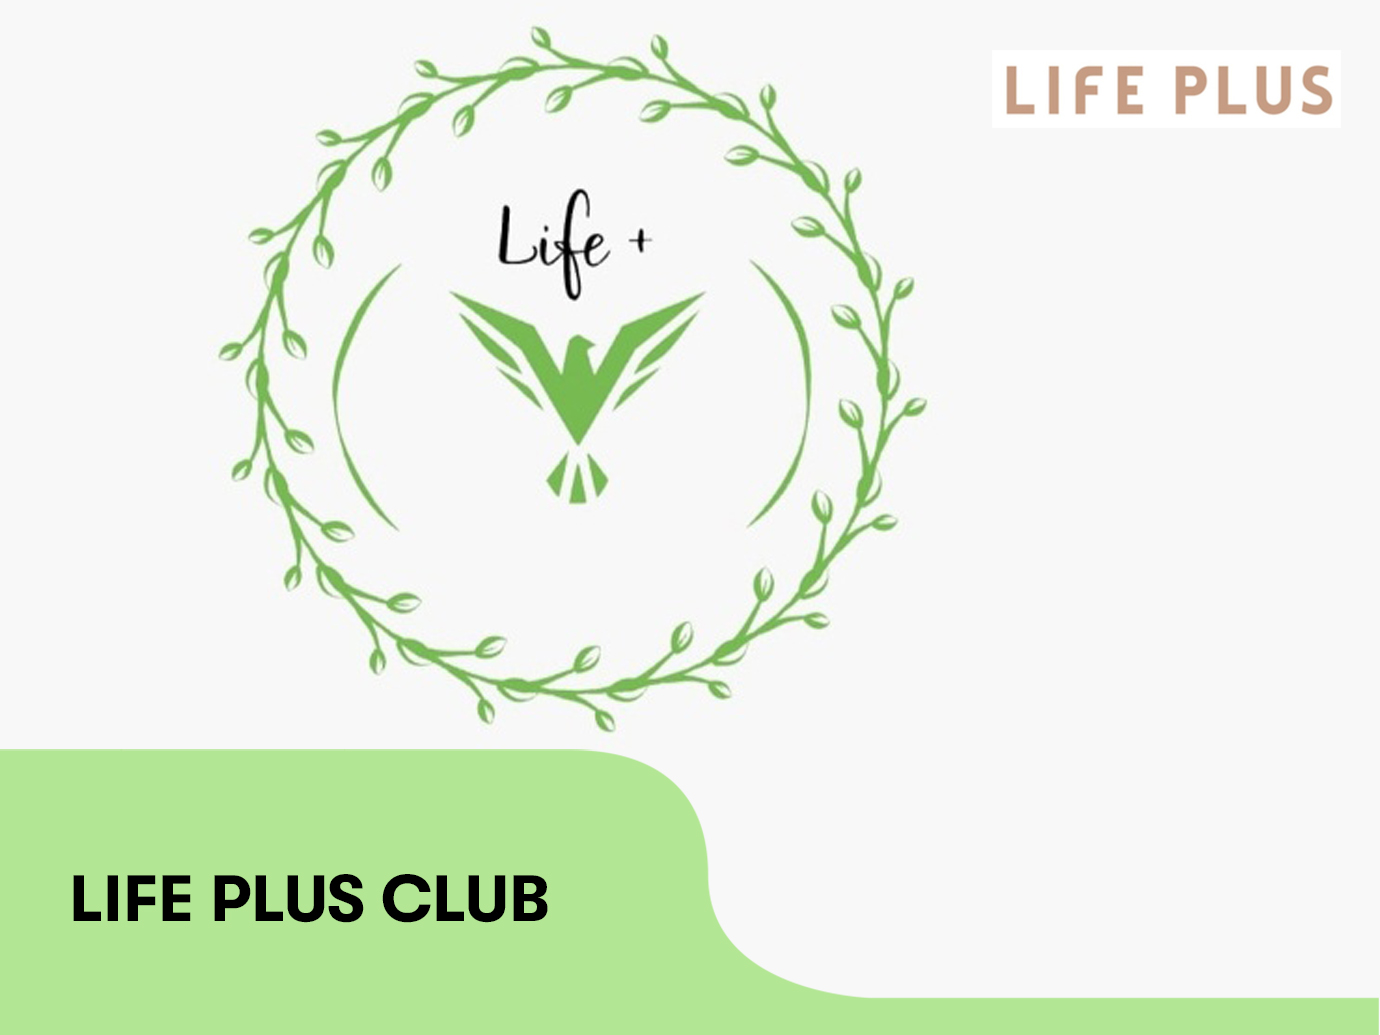 Life Plus Club